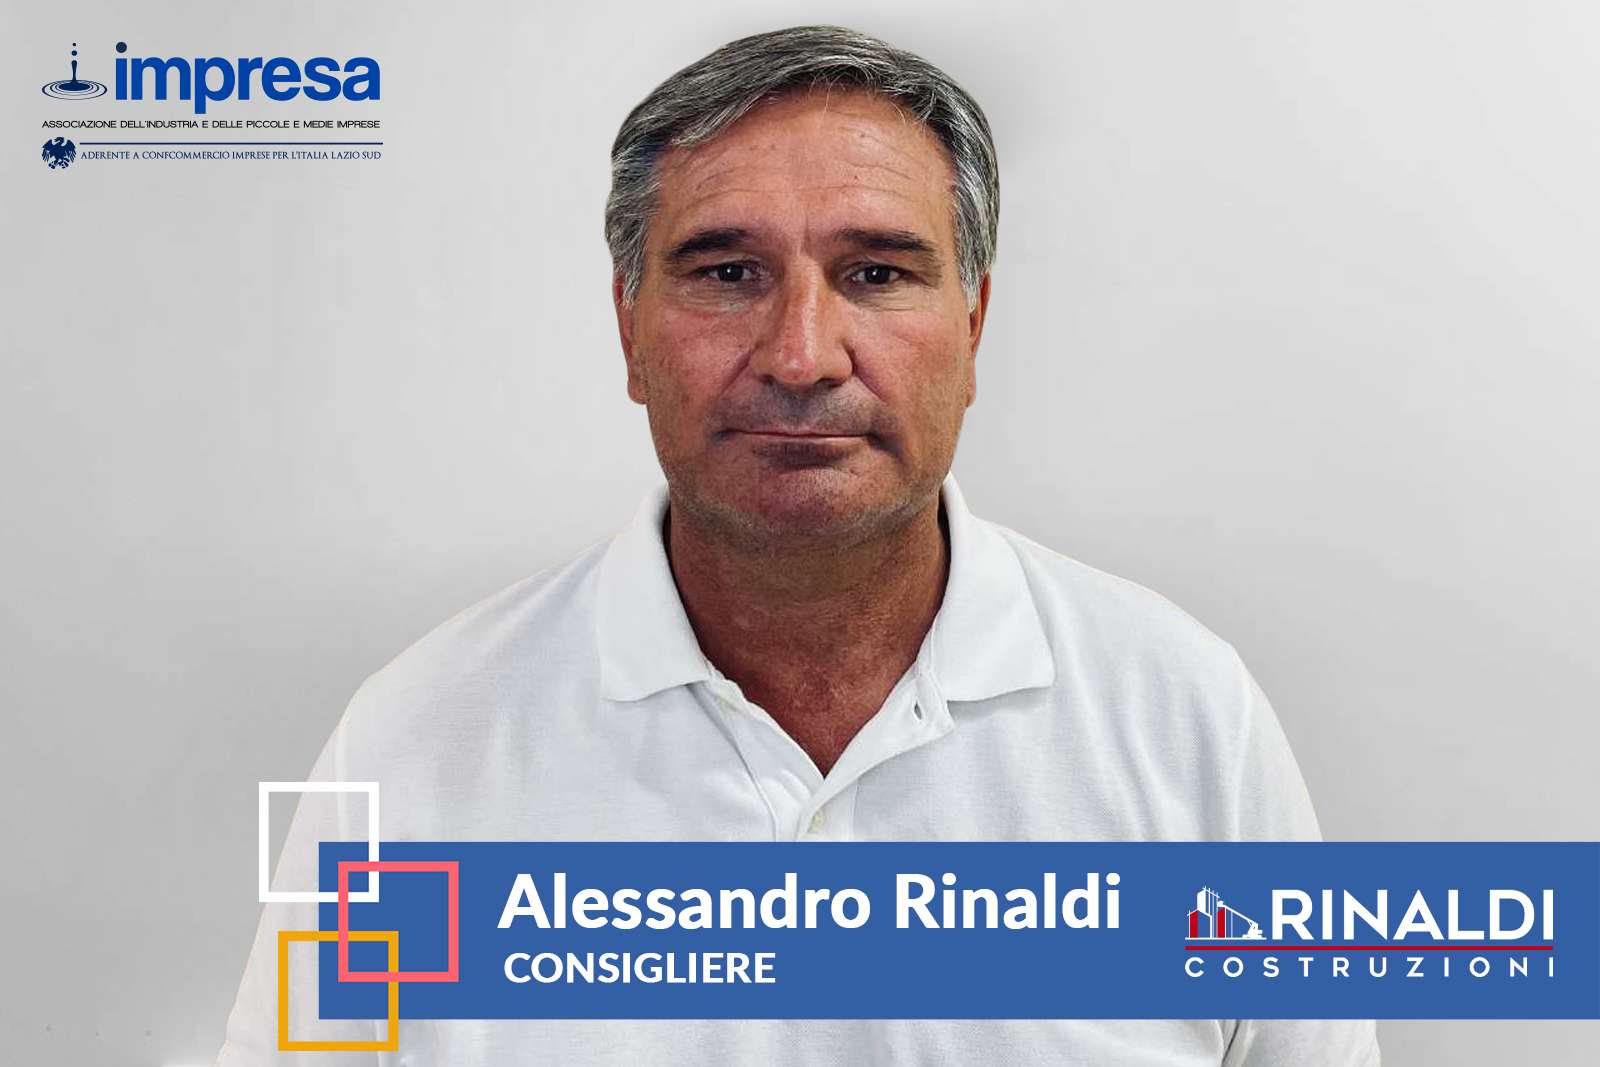 Alessandro Rinaldi CONSIGLIERE